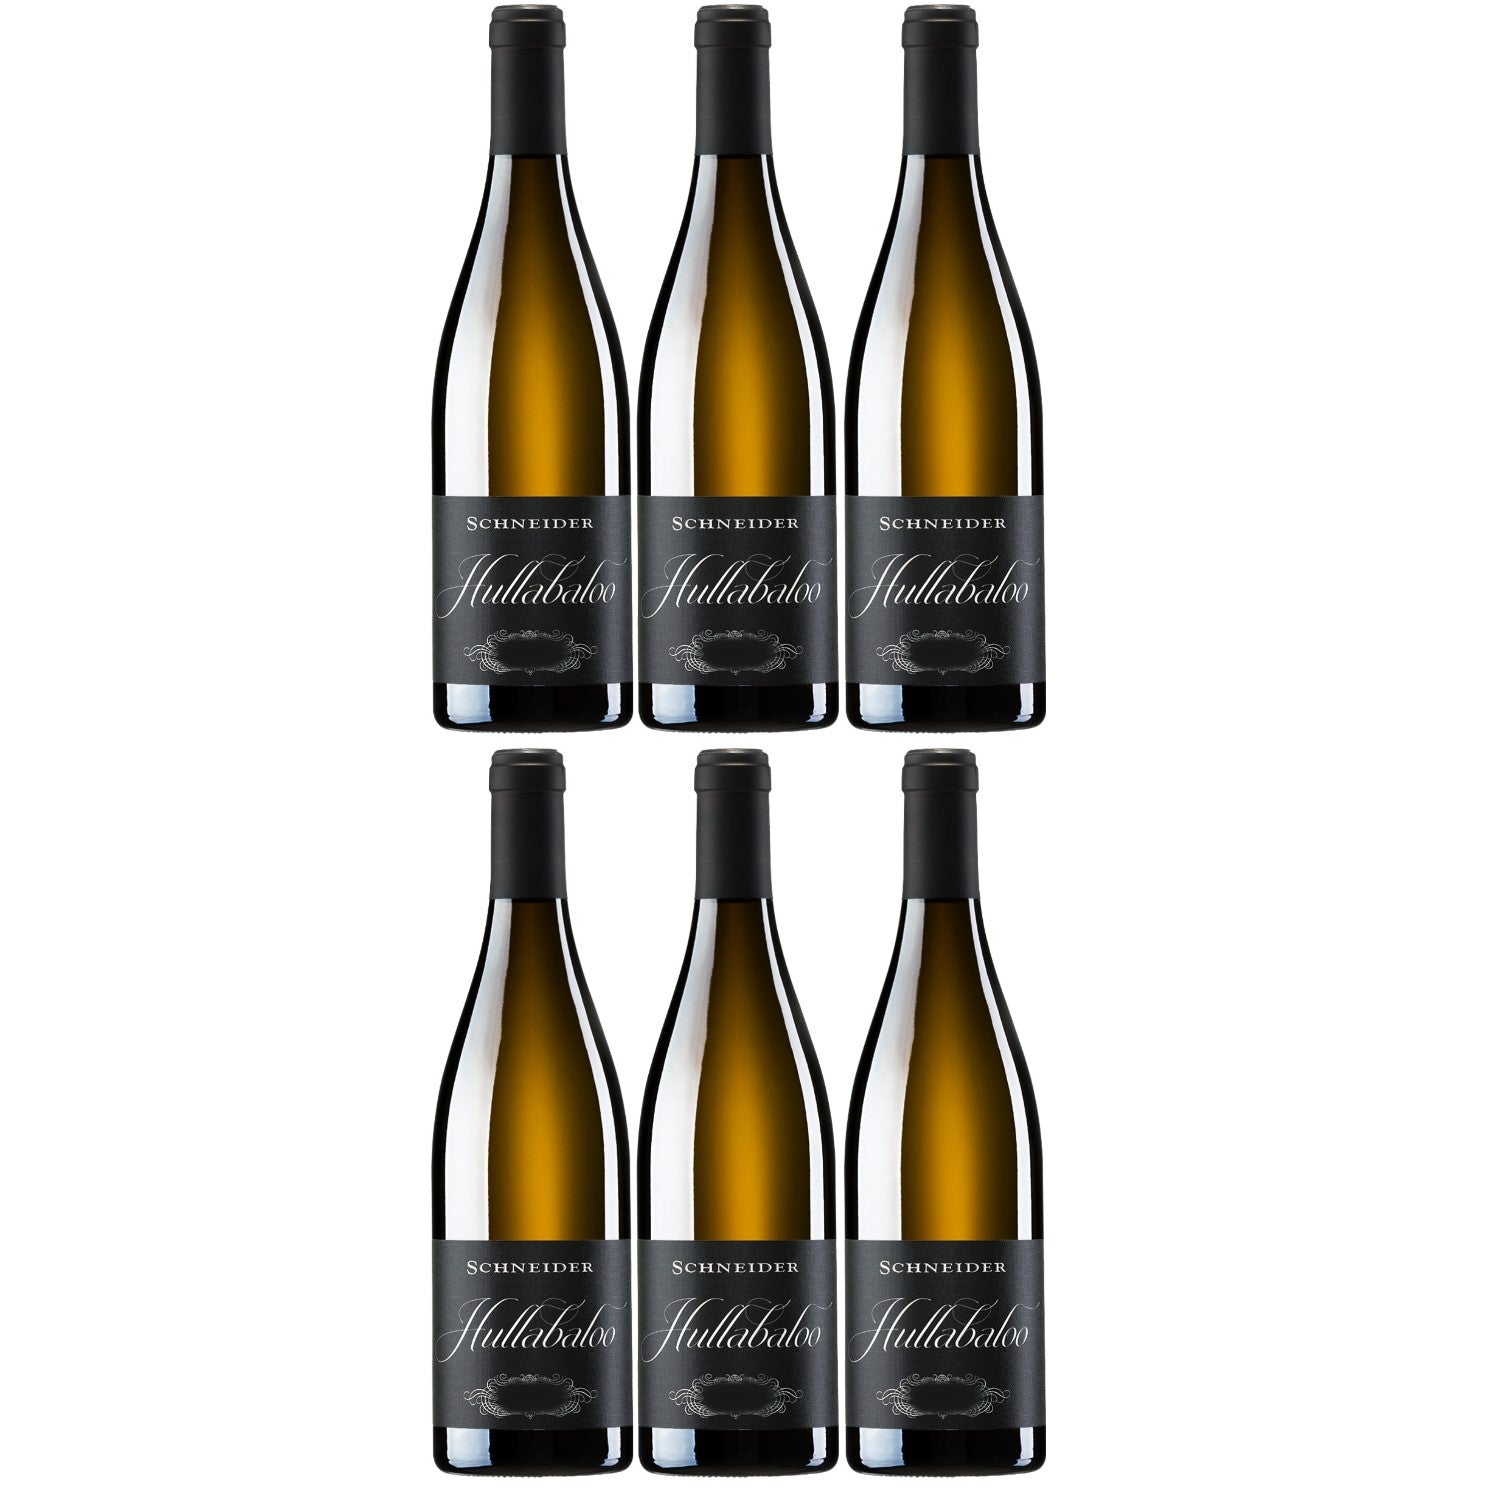 Markus Schneider Hullabaloo Weißwein deutscher Wein trocken Pfalz (6 x 0.75l) - Versanel -